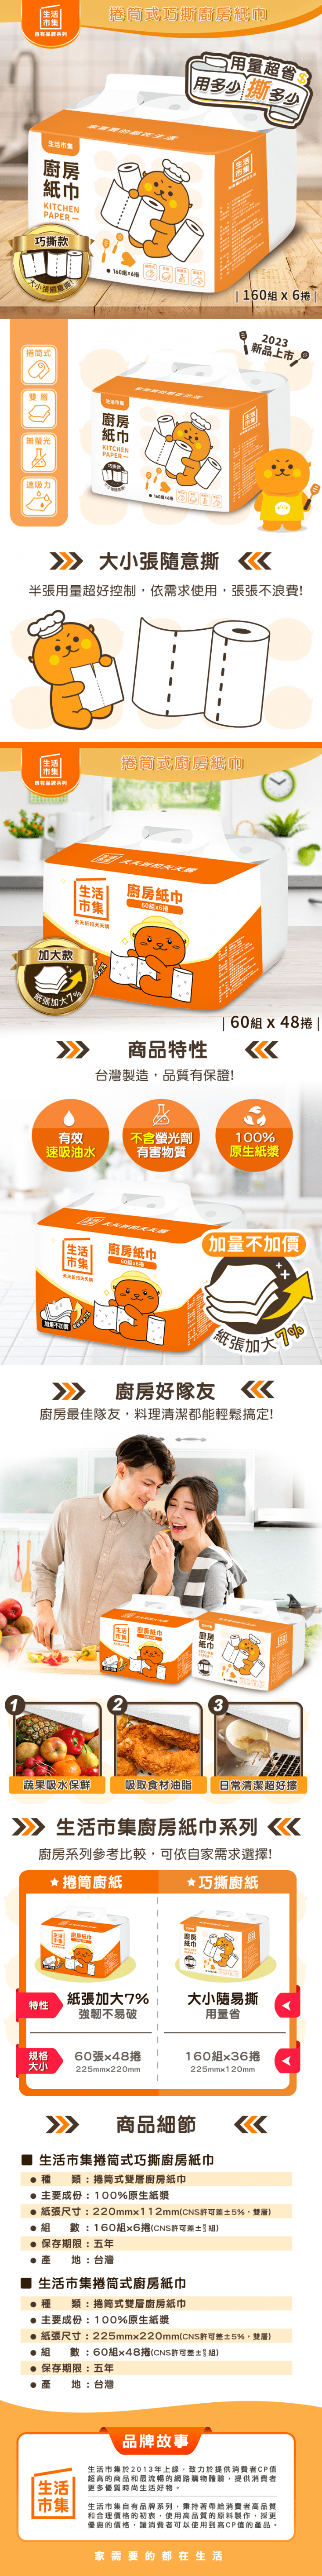 【生活市集】捲筒式廚房紙巾(60張x6捲x8袋/箱) 全新升級 紙張加大7%